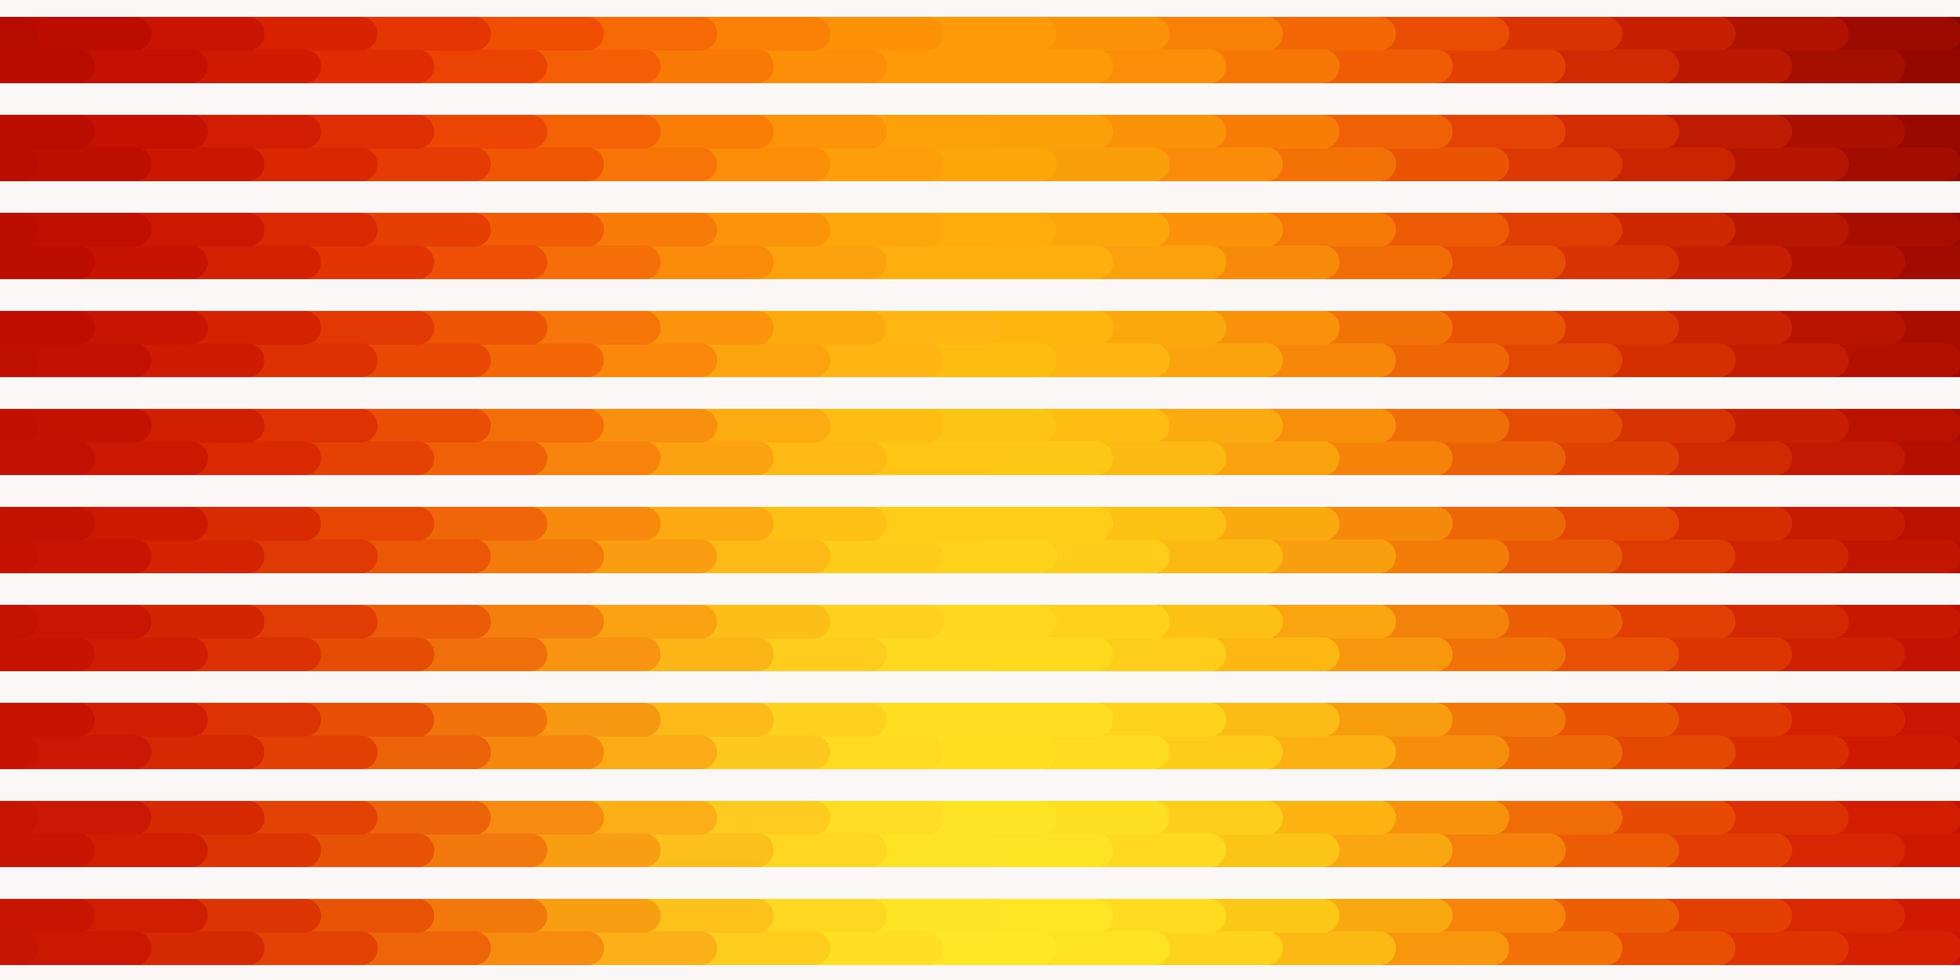 trama vettoriale arancione chiaro con linee.